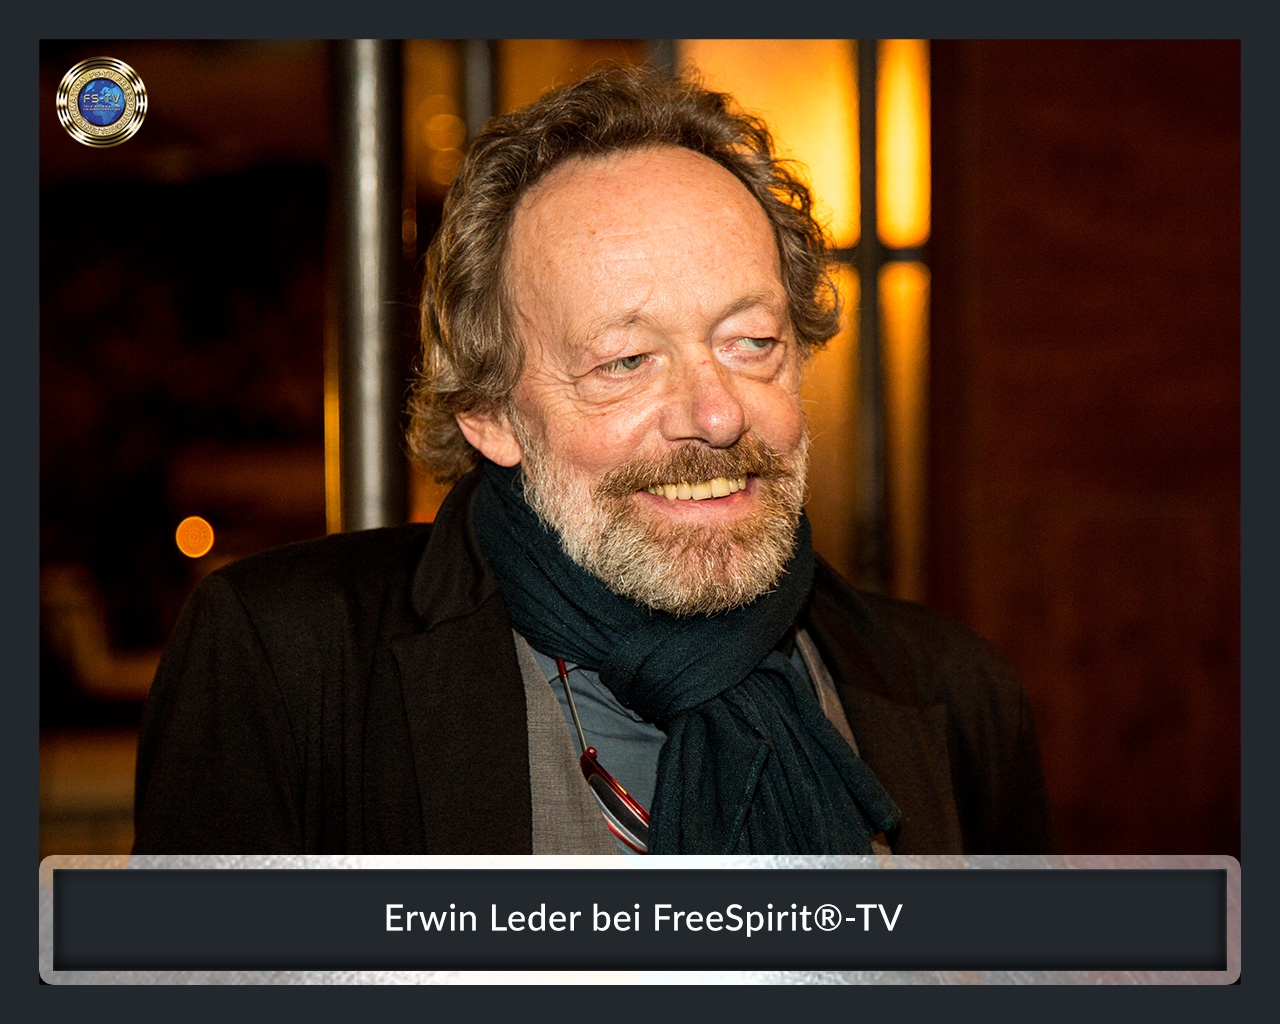 FS-TV-Bildergallerie-Erwin-Leder5